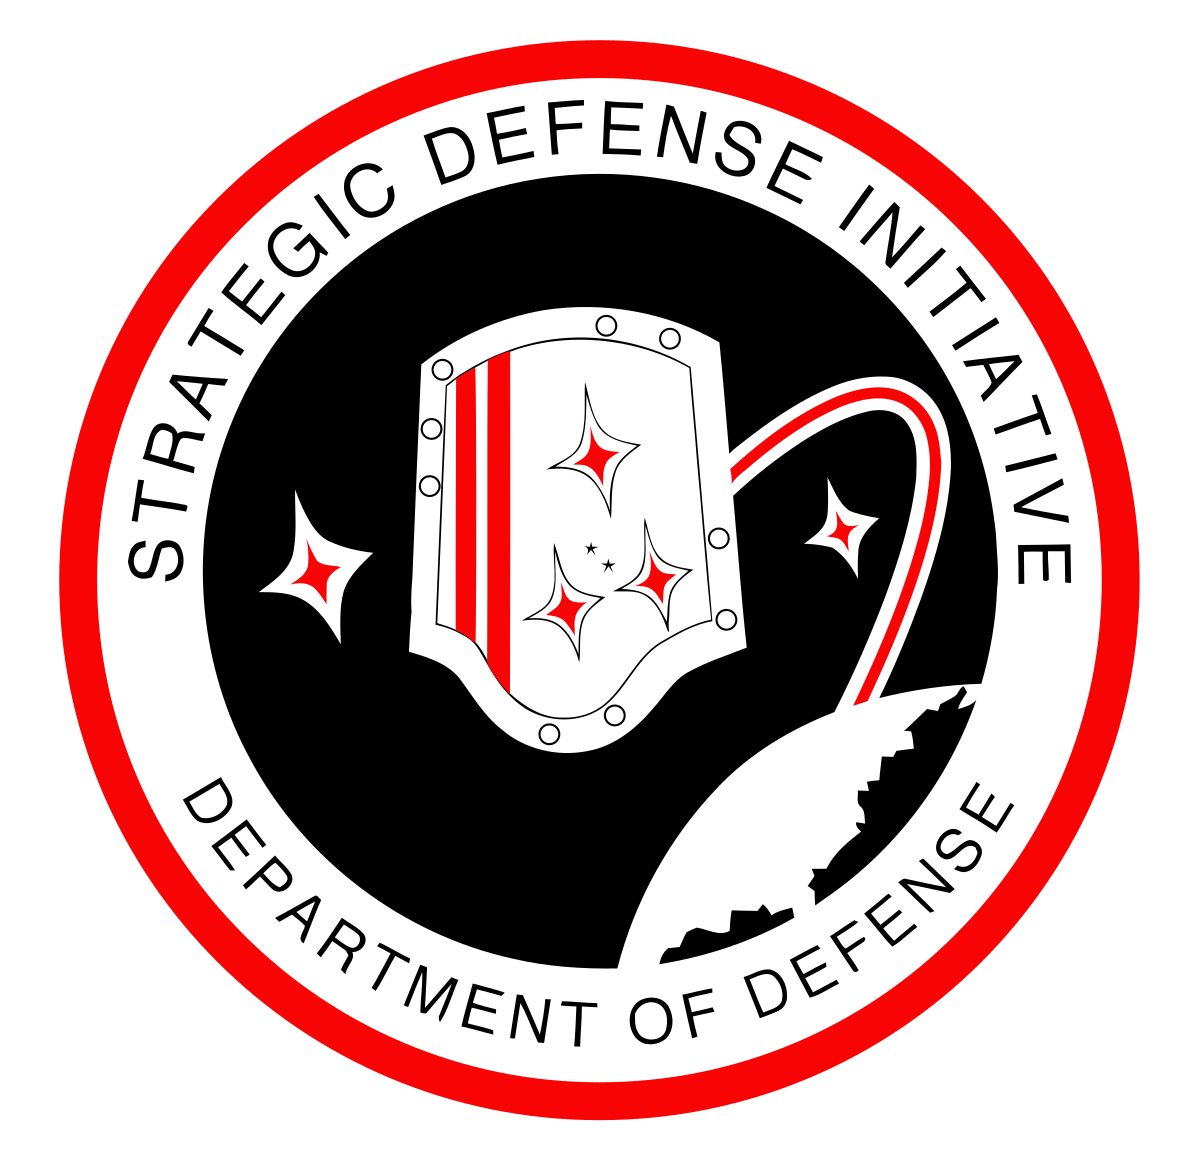 Strategic Defense Initiative - Wikipedia